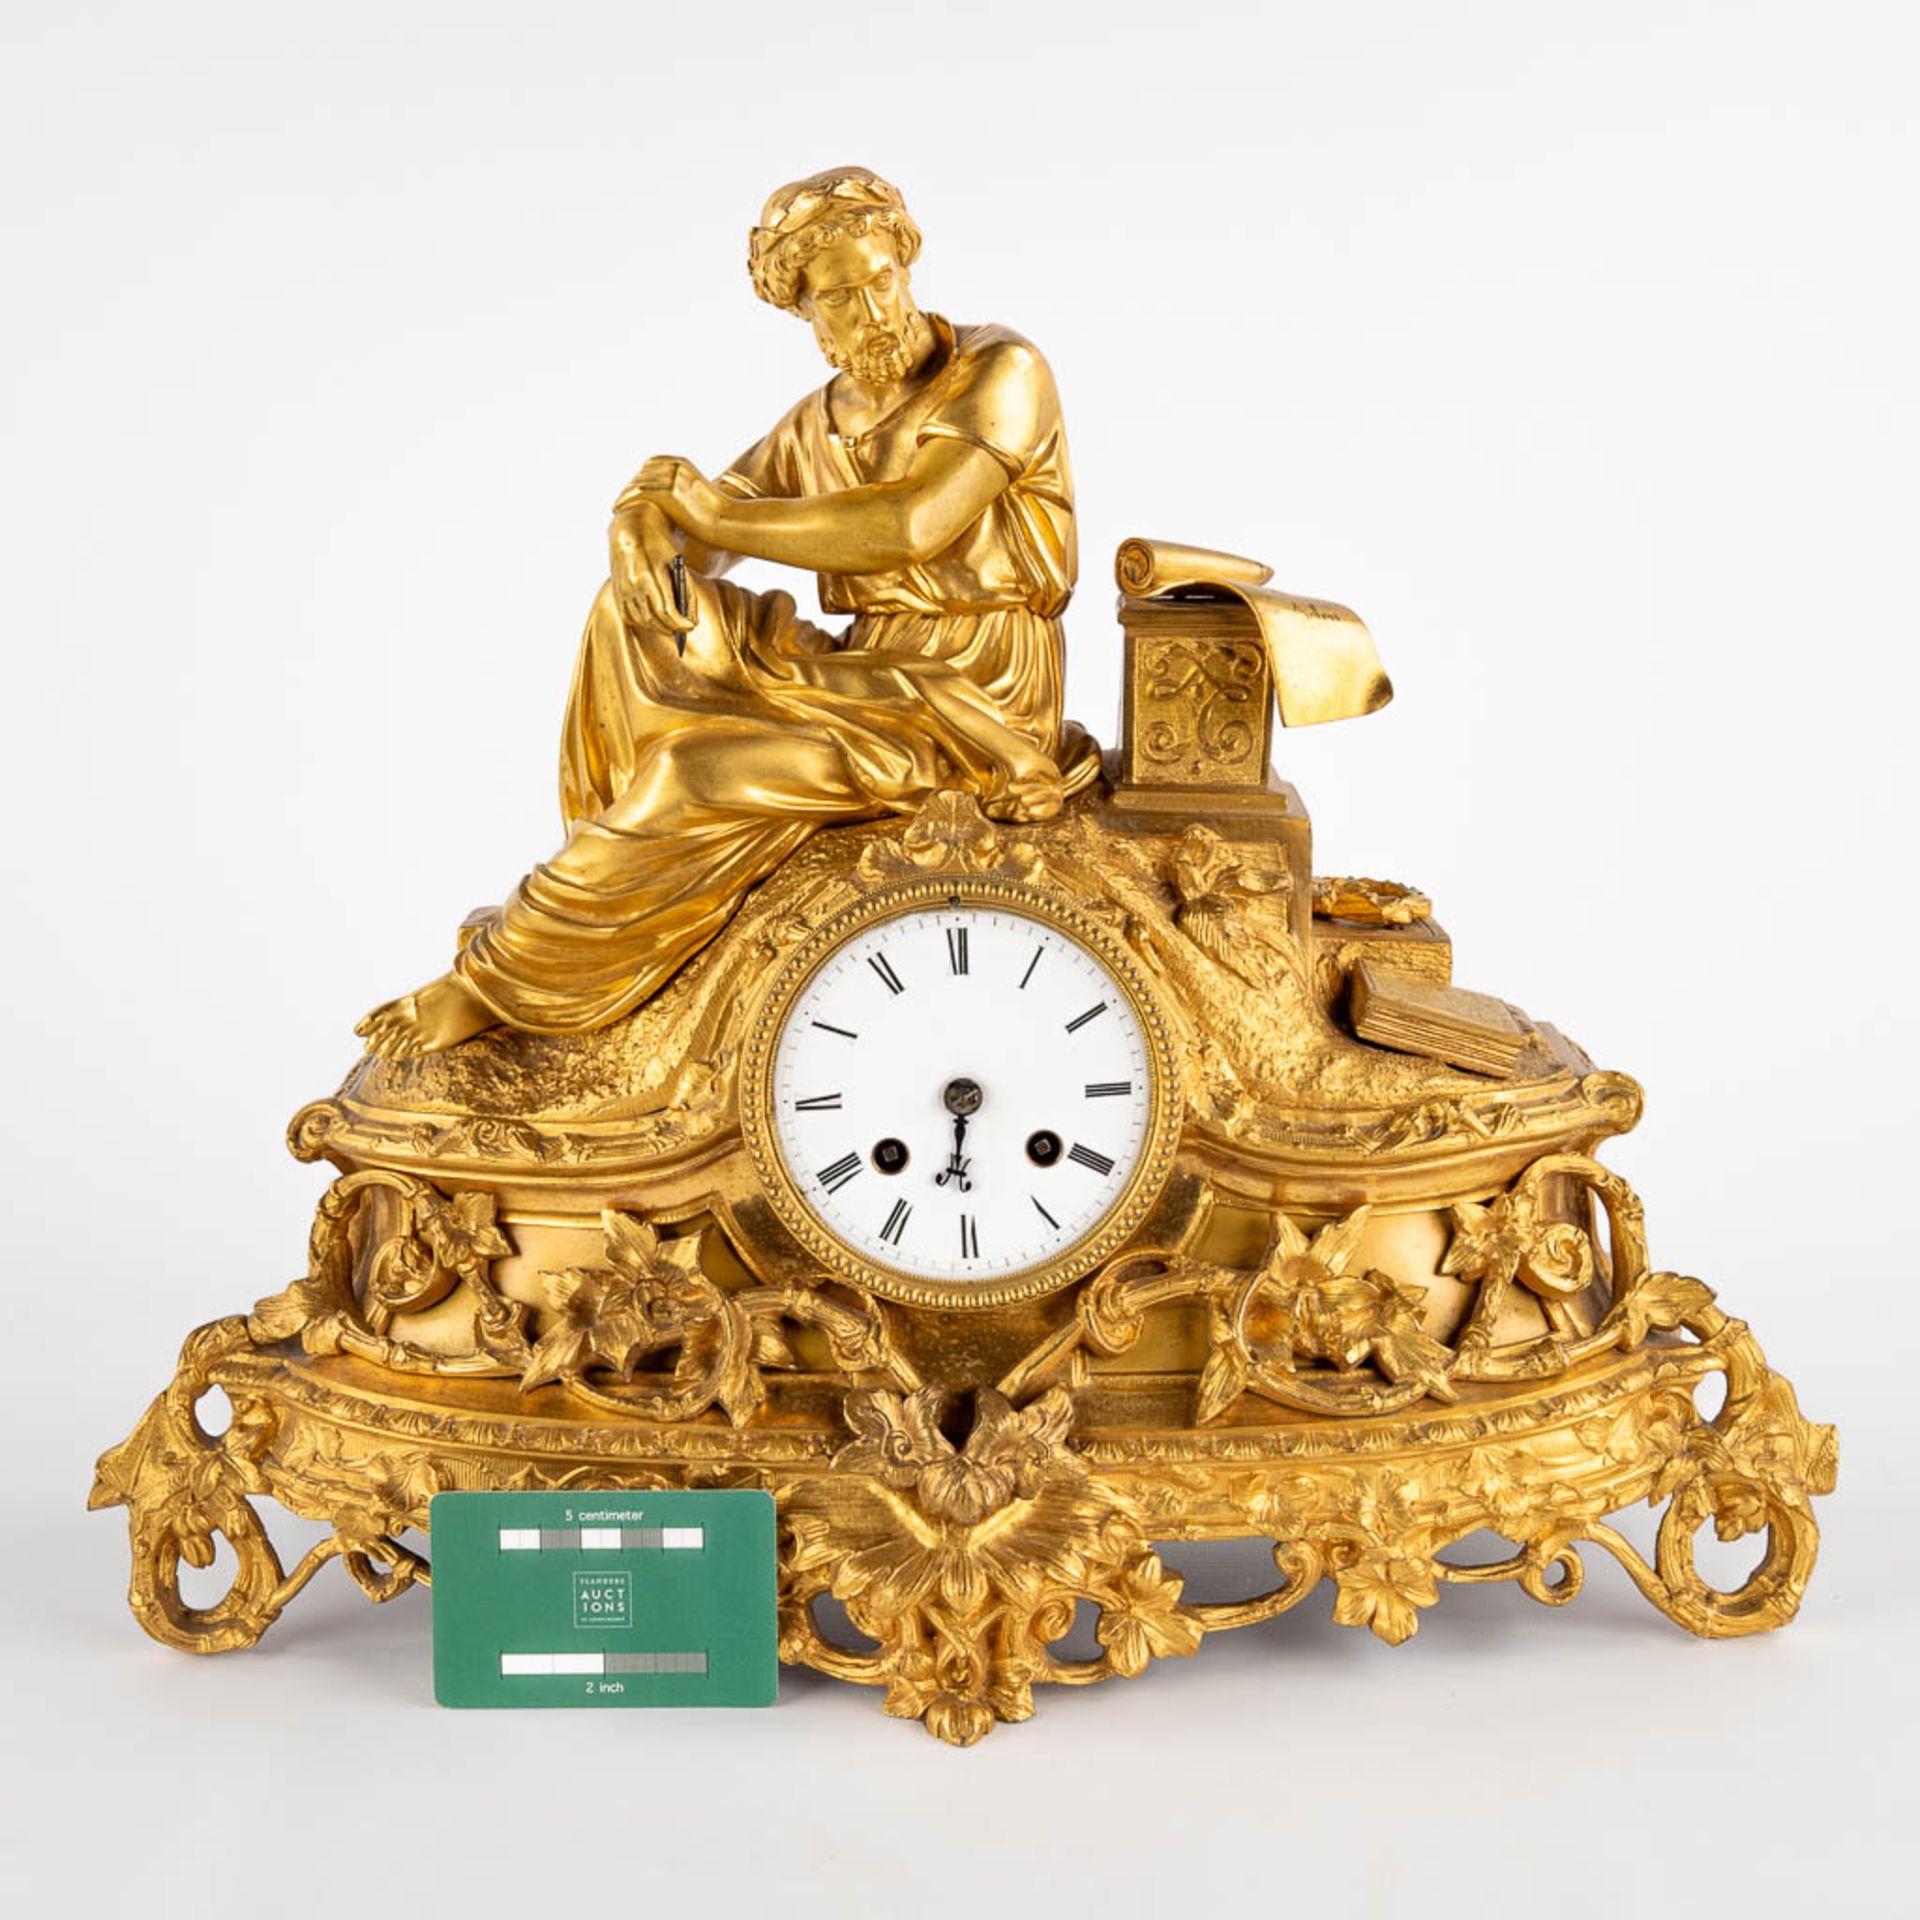 A mantle clock 'Lois De Solon', gilt bronze. France, 19th C. (D:14 x W:38 x H:52 cm) - Image 2 of 13